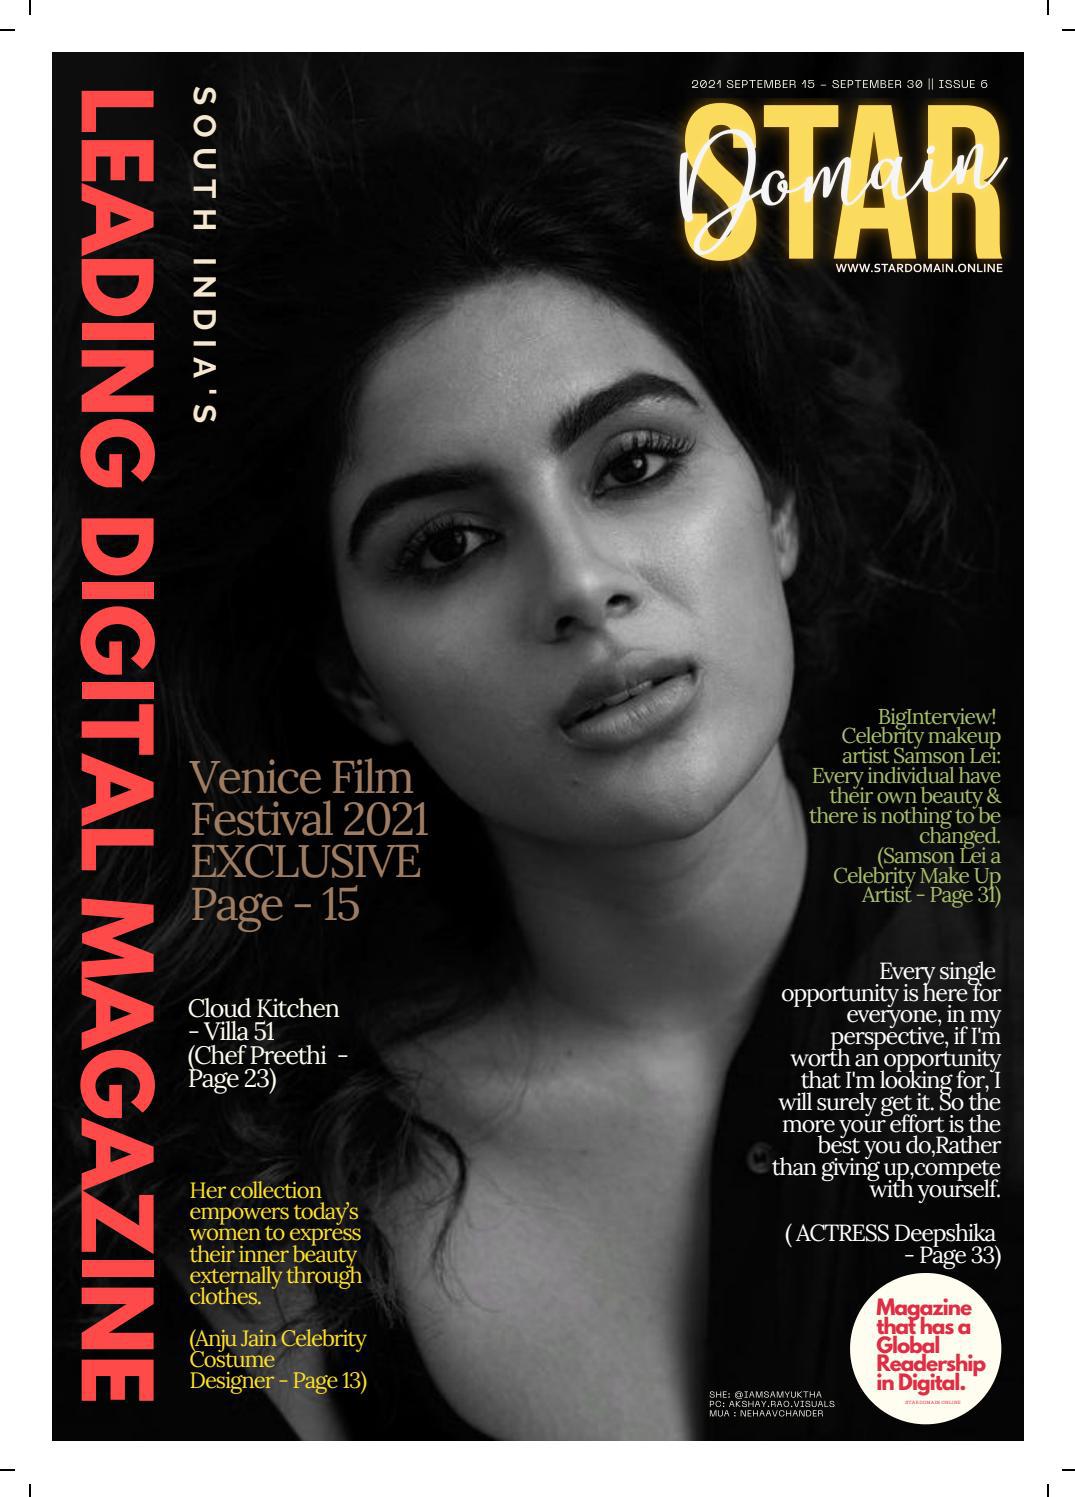 Star Domain Magazine, Issue 6 September 2021